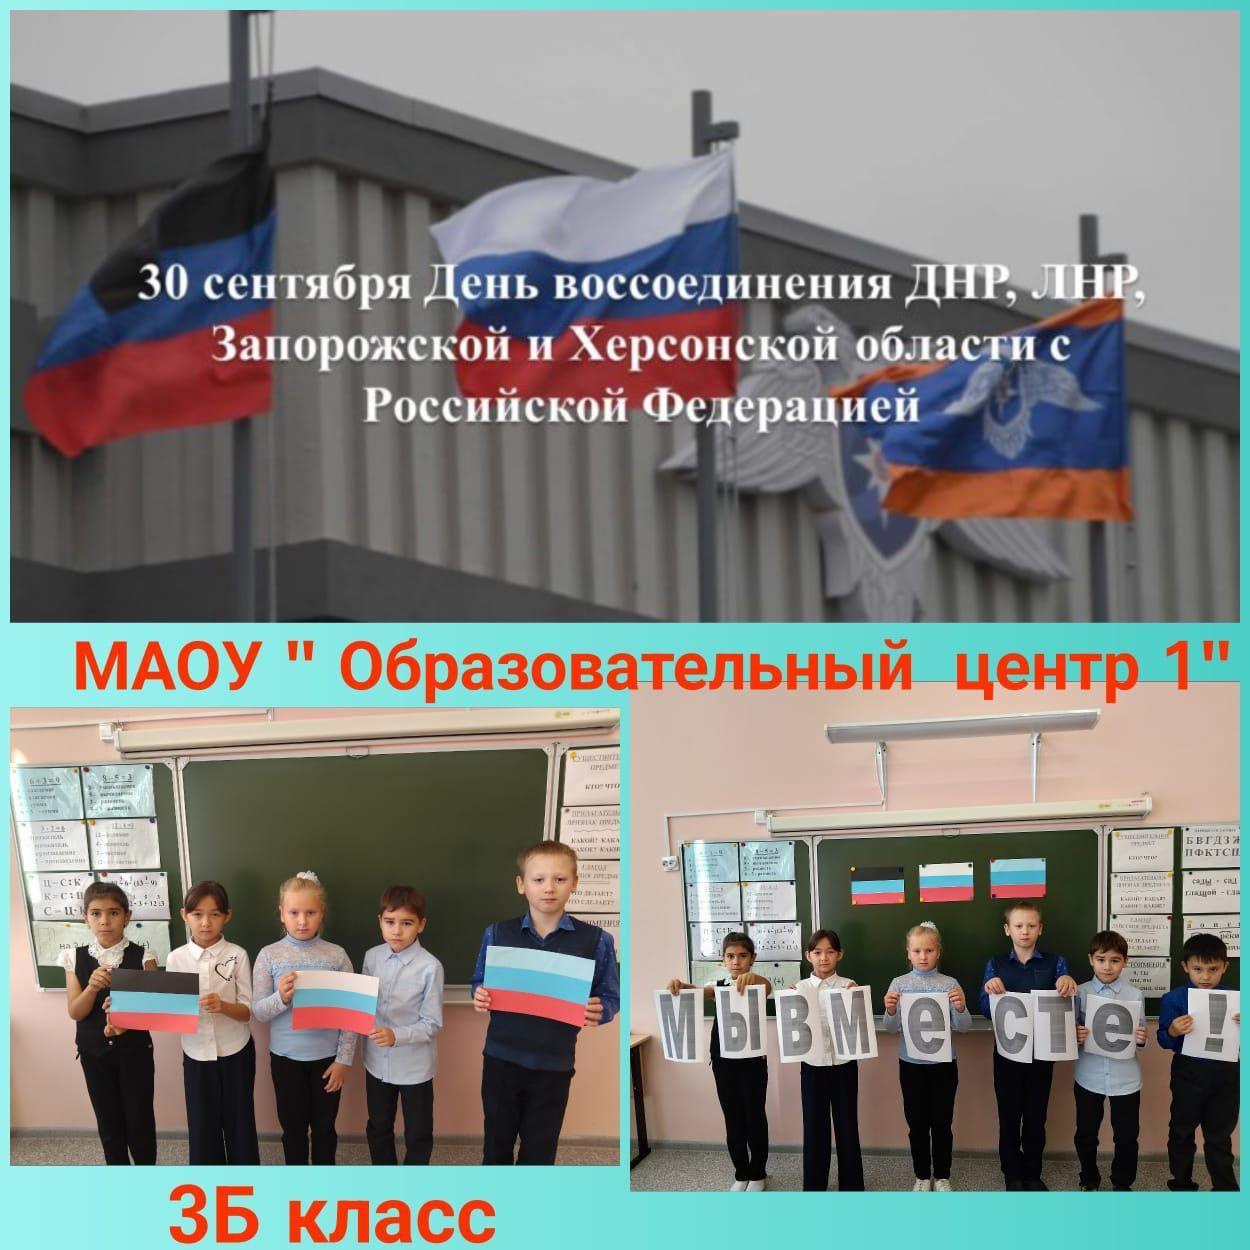 Учащиеся отмечает годовщину воссоединения новых регионов с Россией.